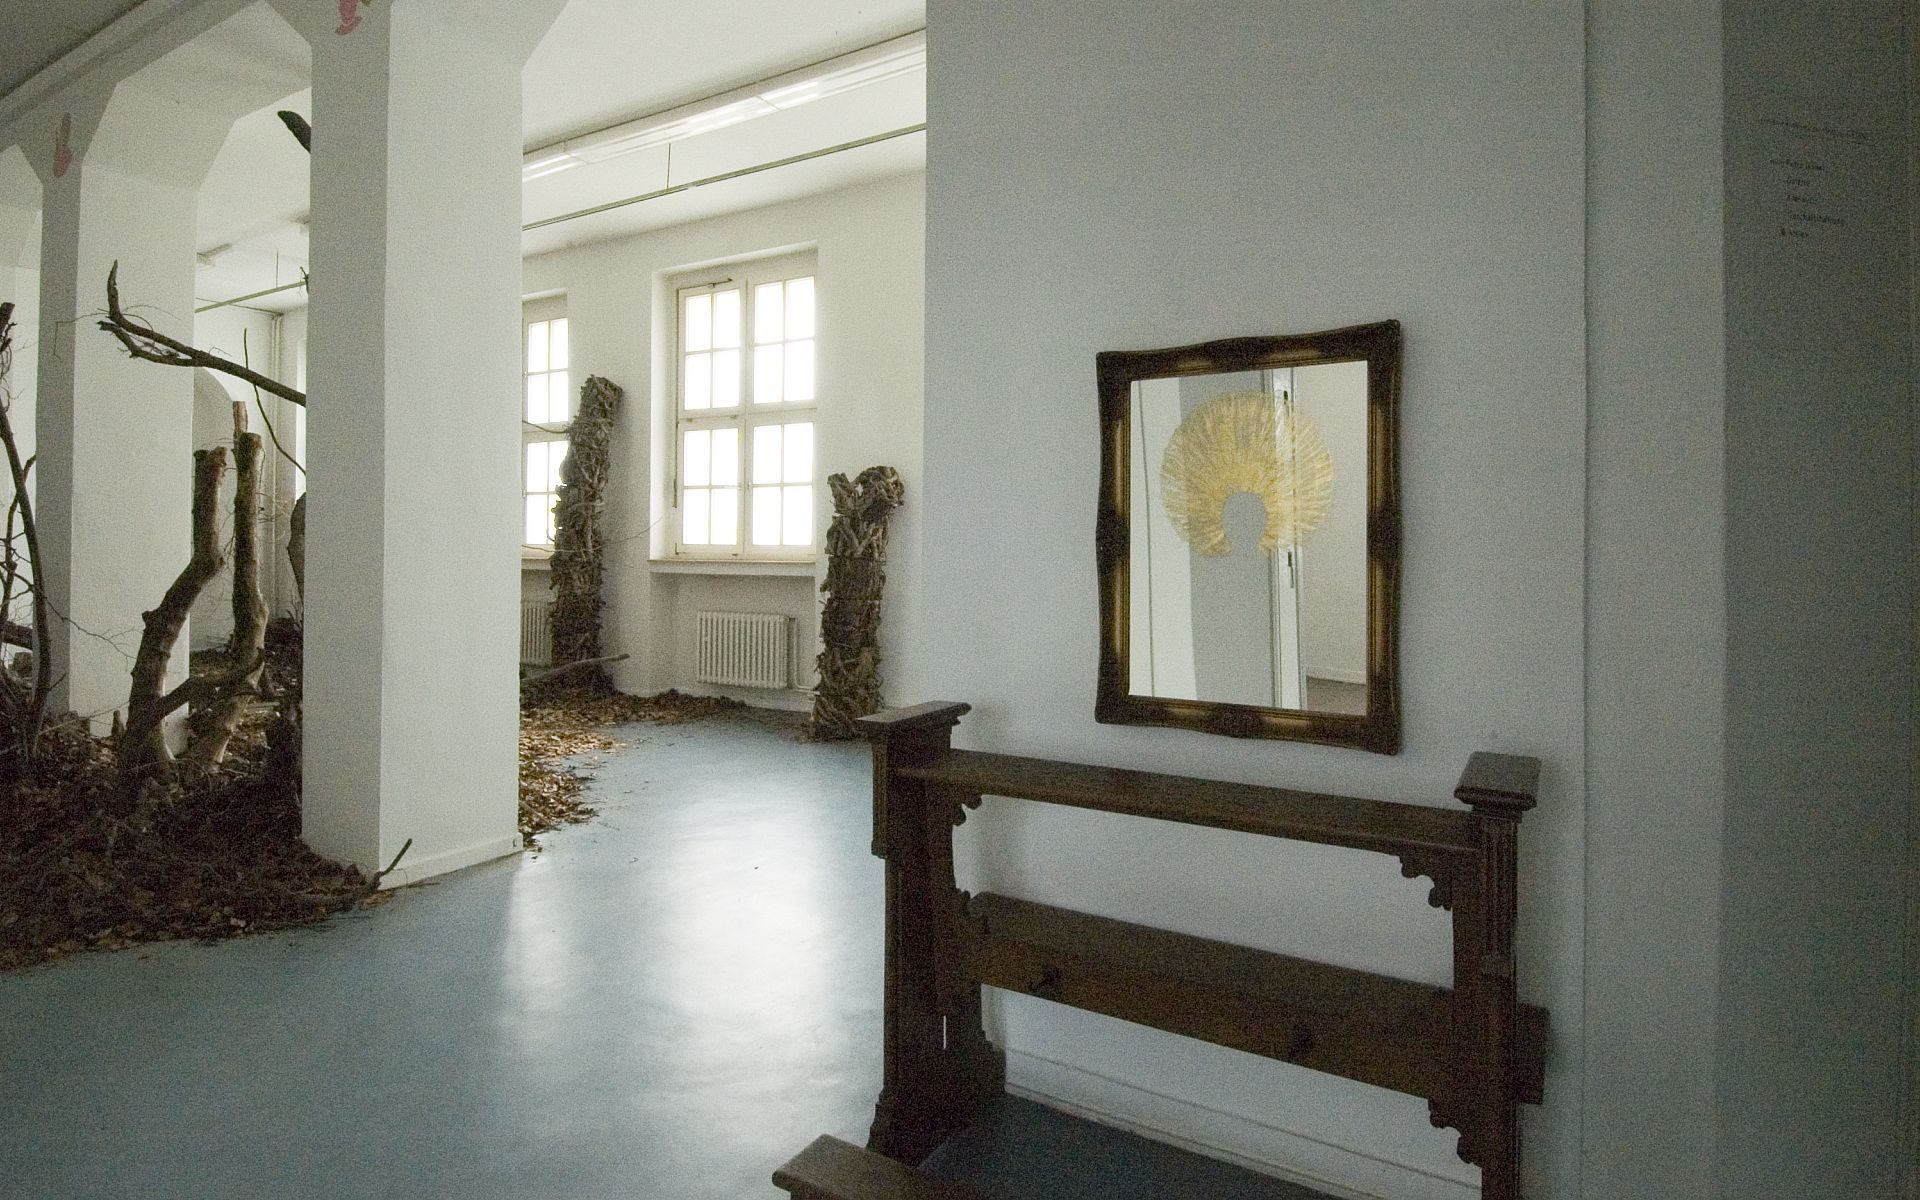 Klasse Daniele Buetti, Kunstakademie Münster